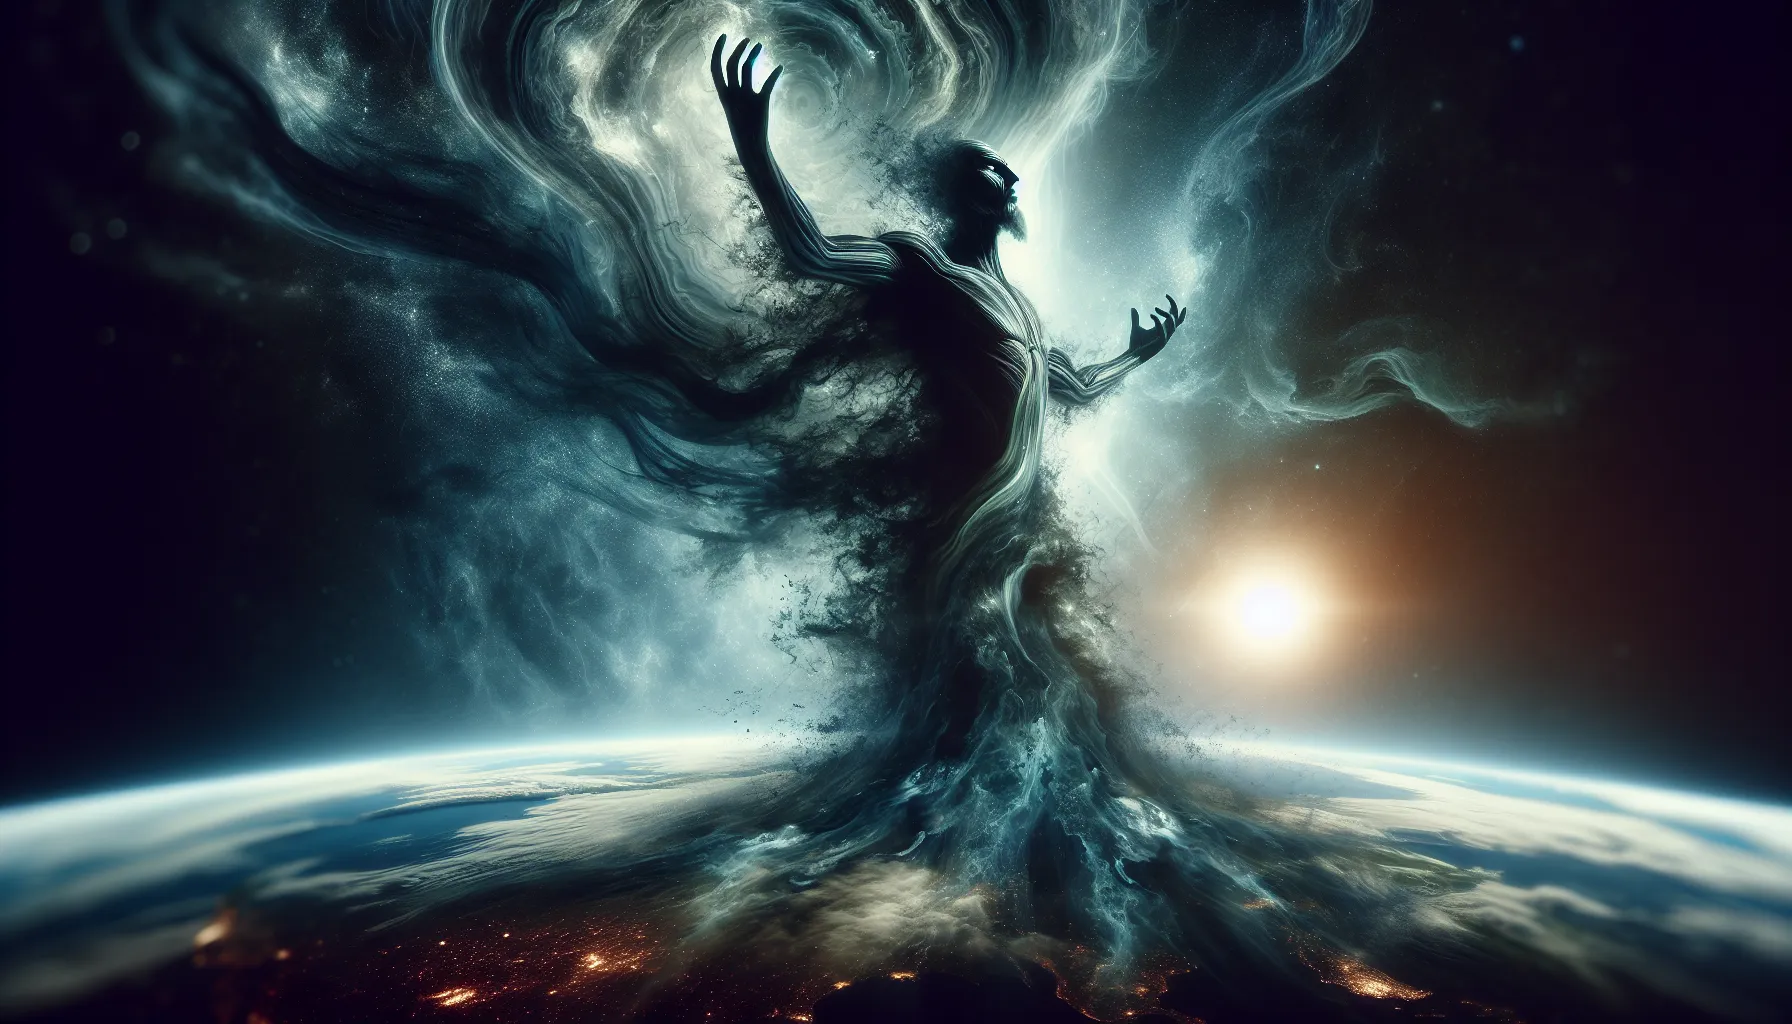 Representación abstracta de una figura oscura y misteriosa ascendiendo al poder en la Tierra